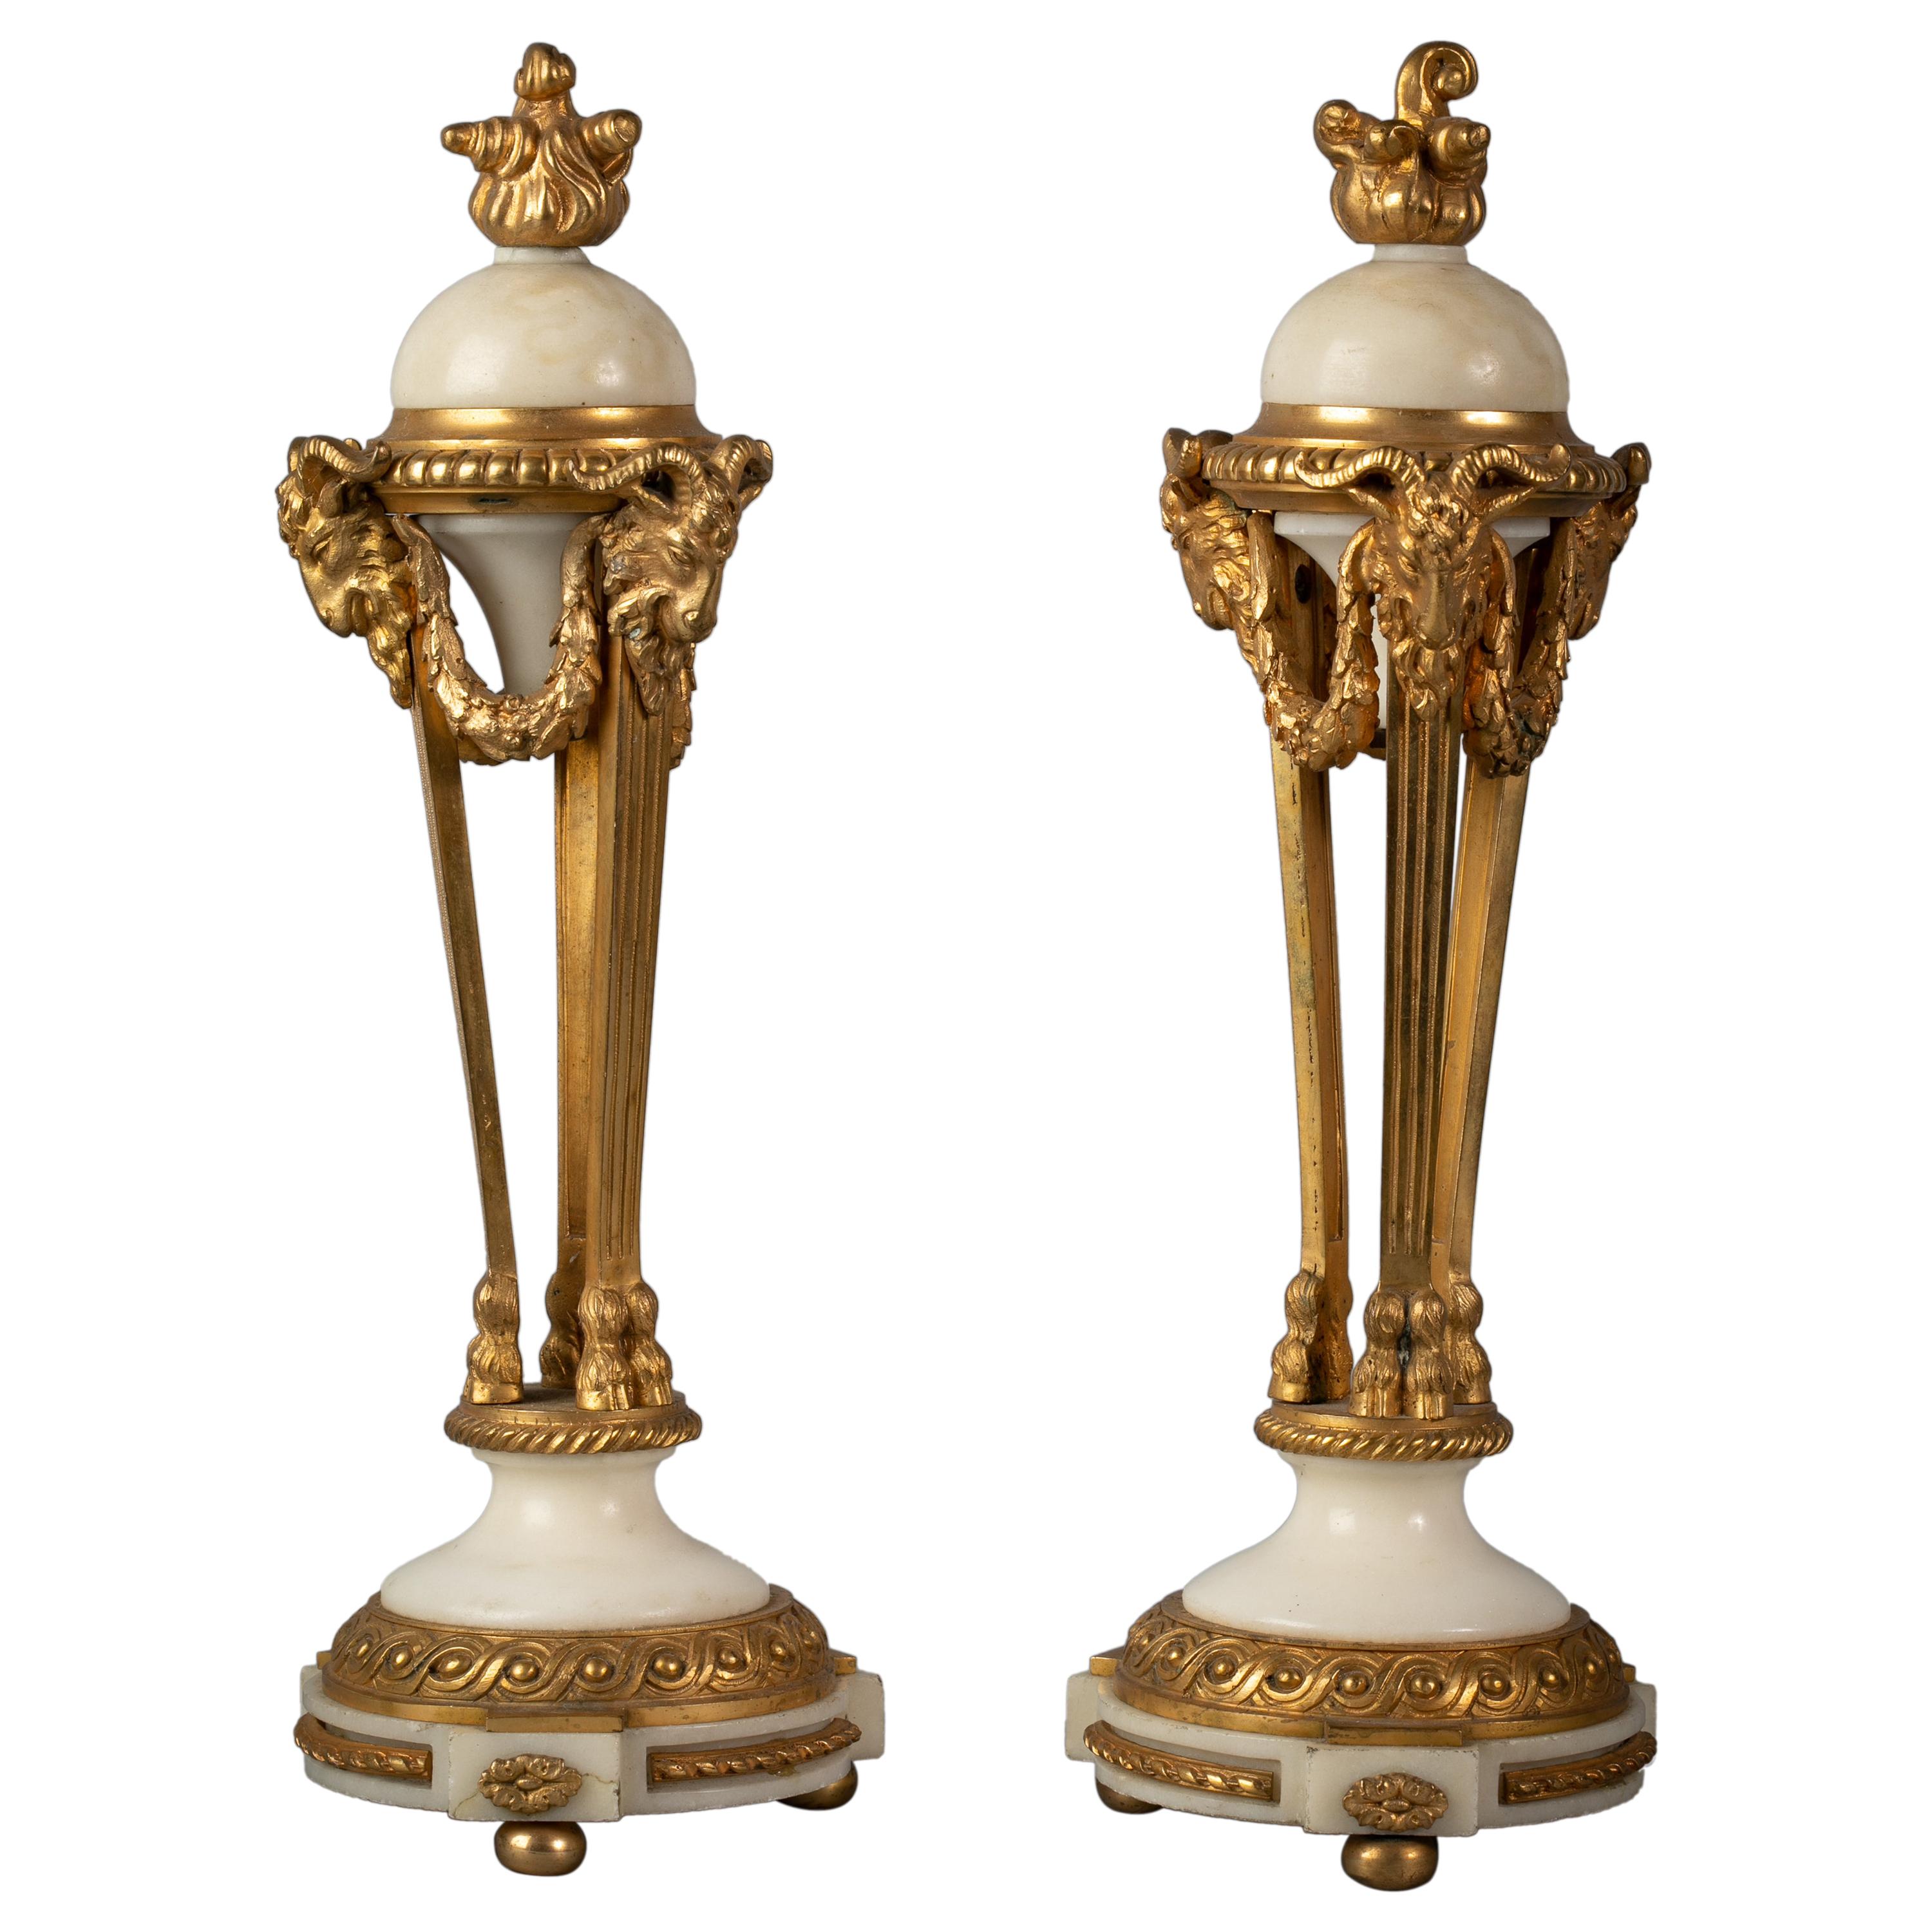 Paire d'urnes françaises recouvertes de bronze doré et de marbre, datant d'environ 1875